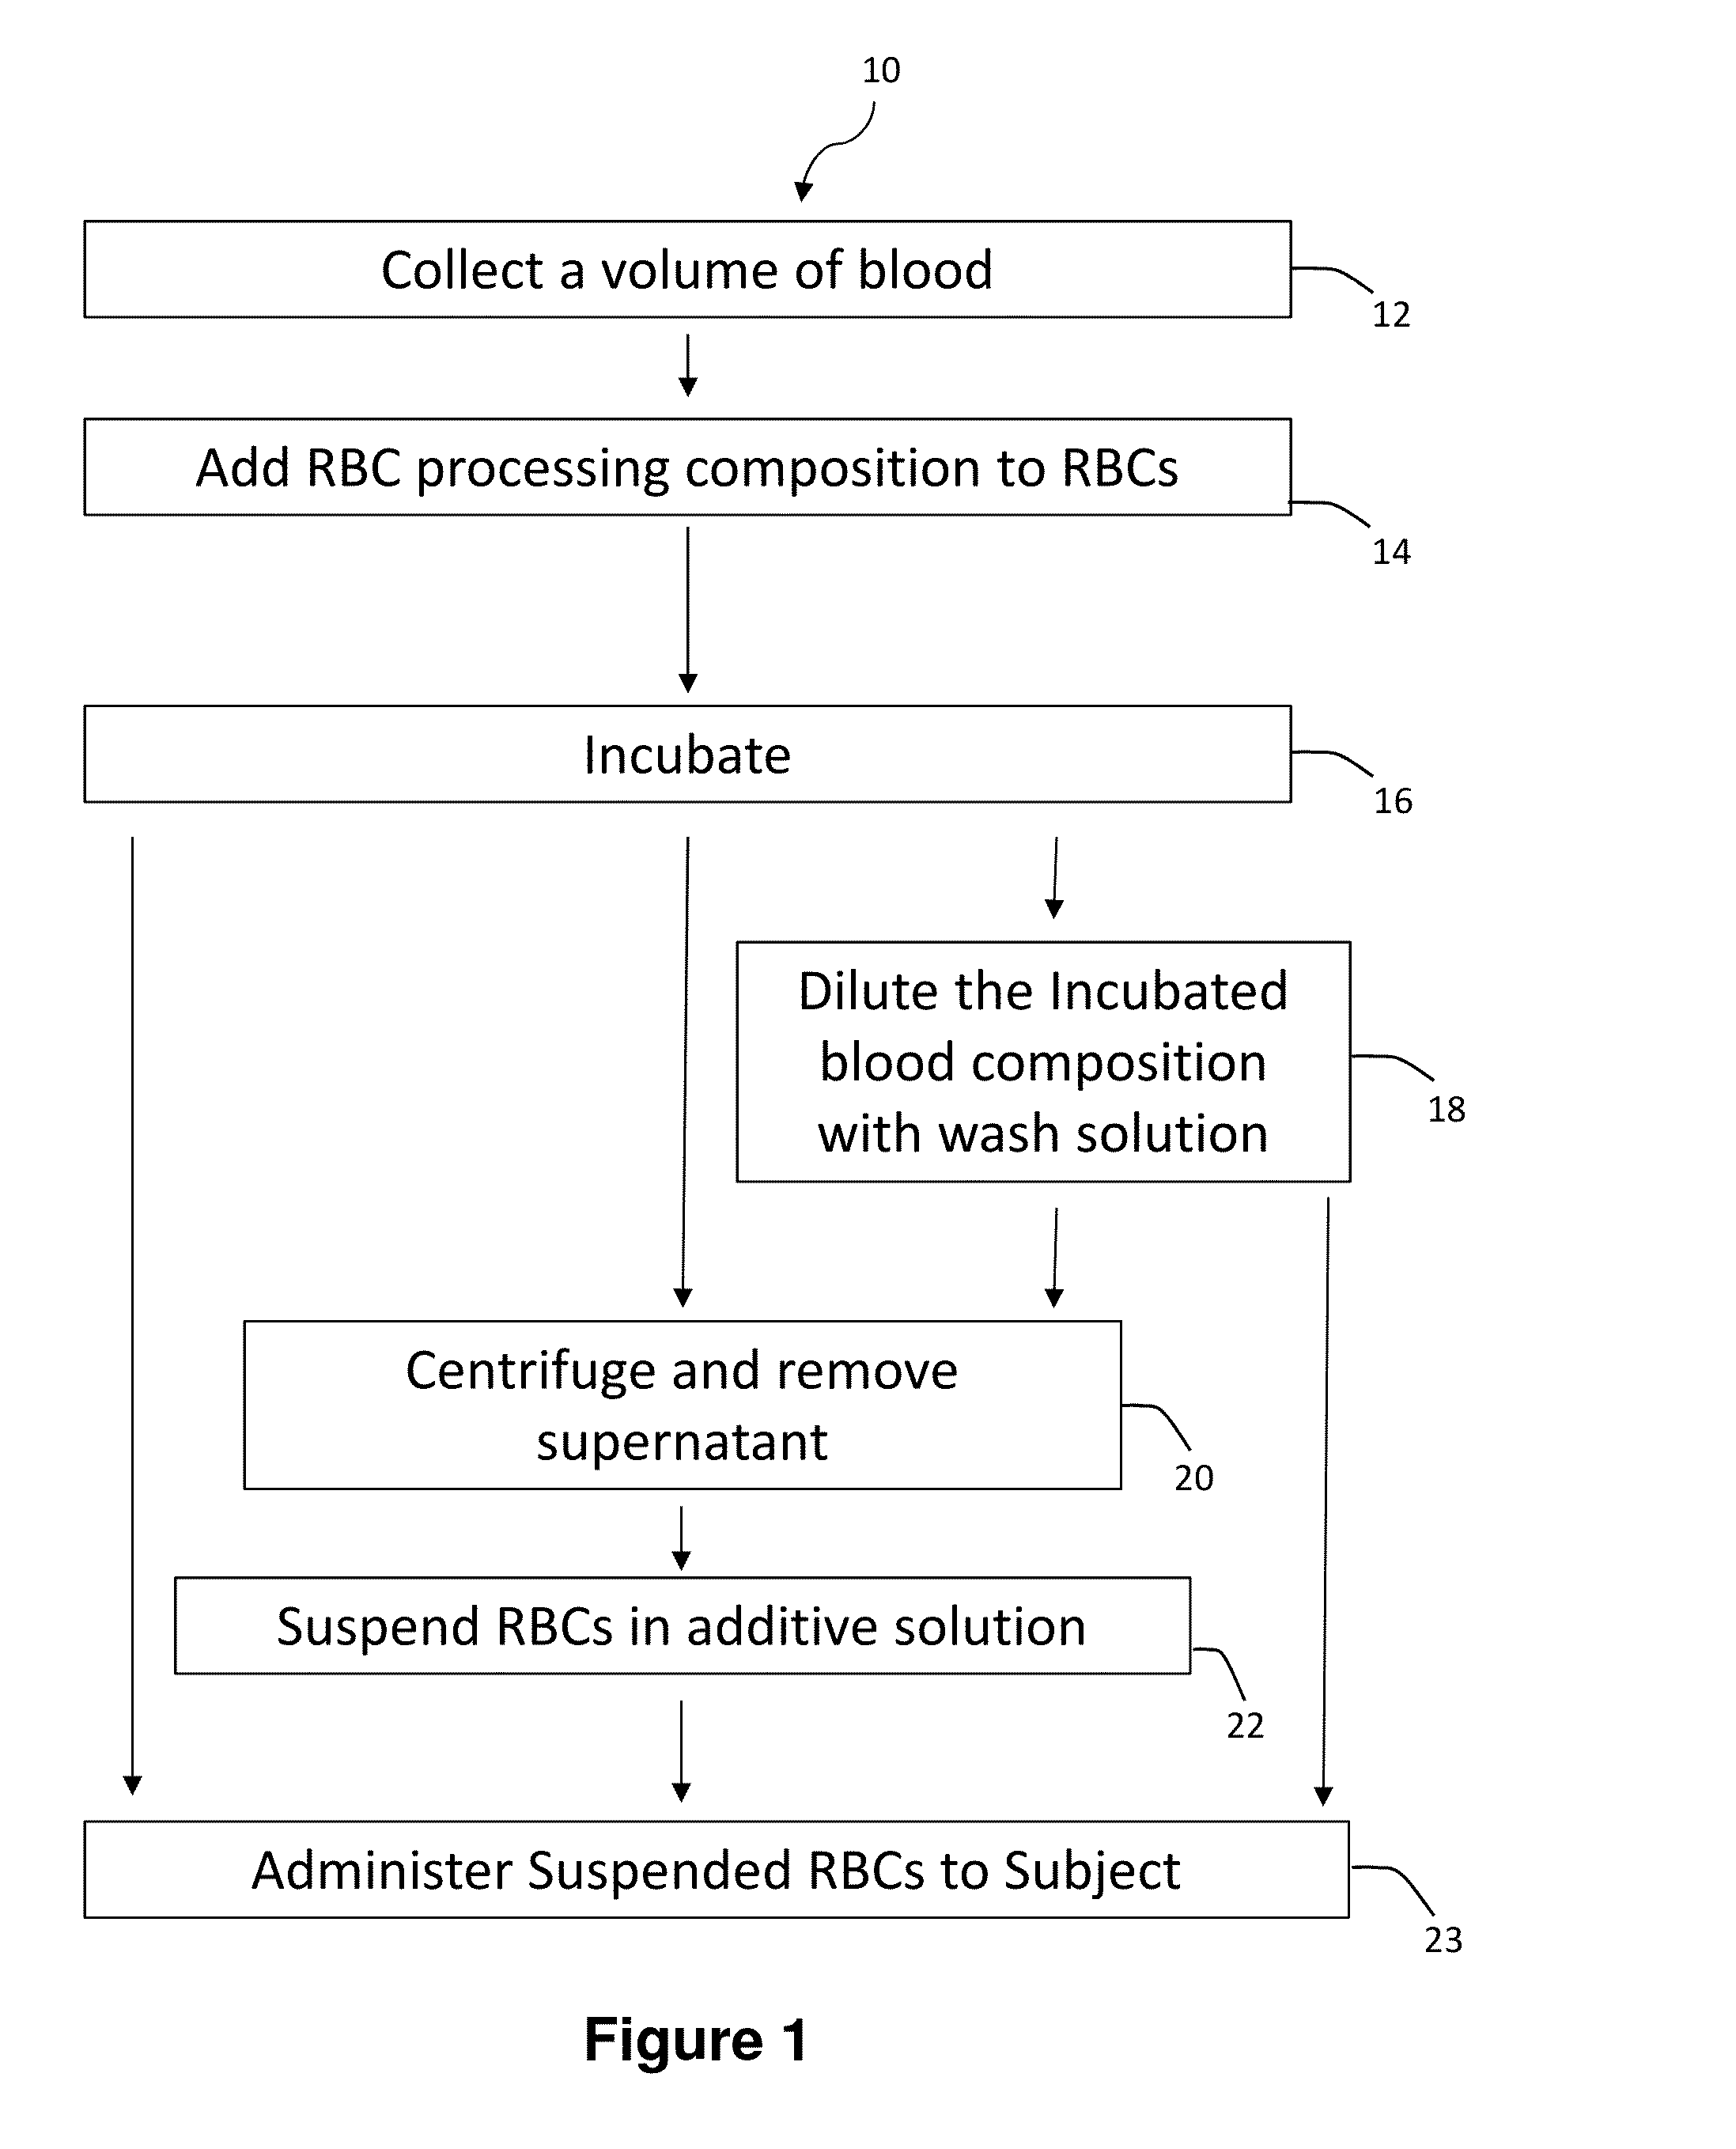 Methods for rejuvenating red blood cells